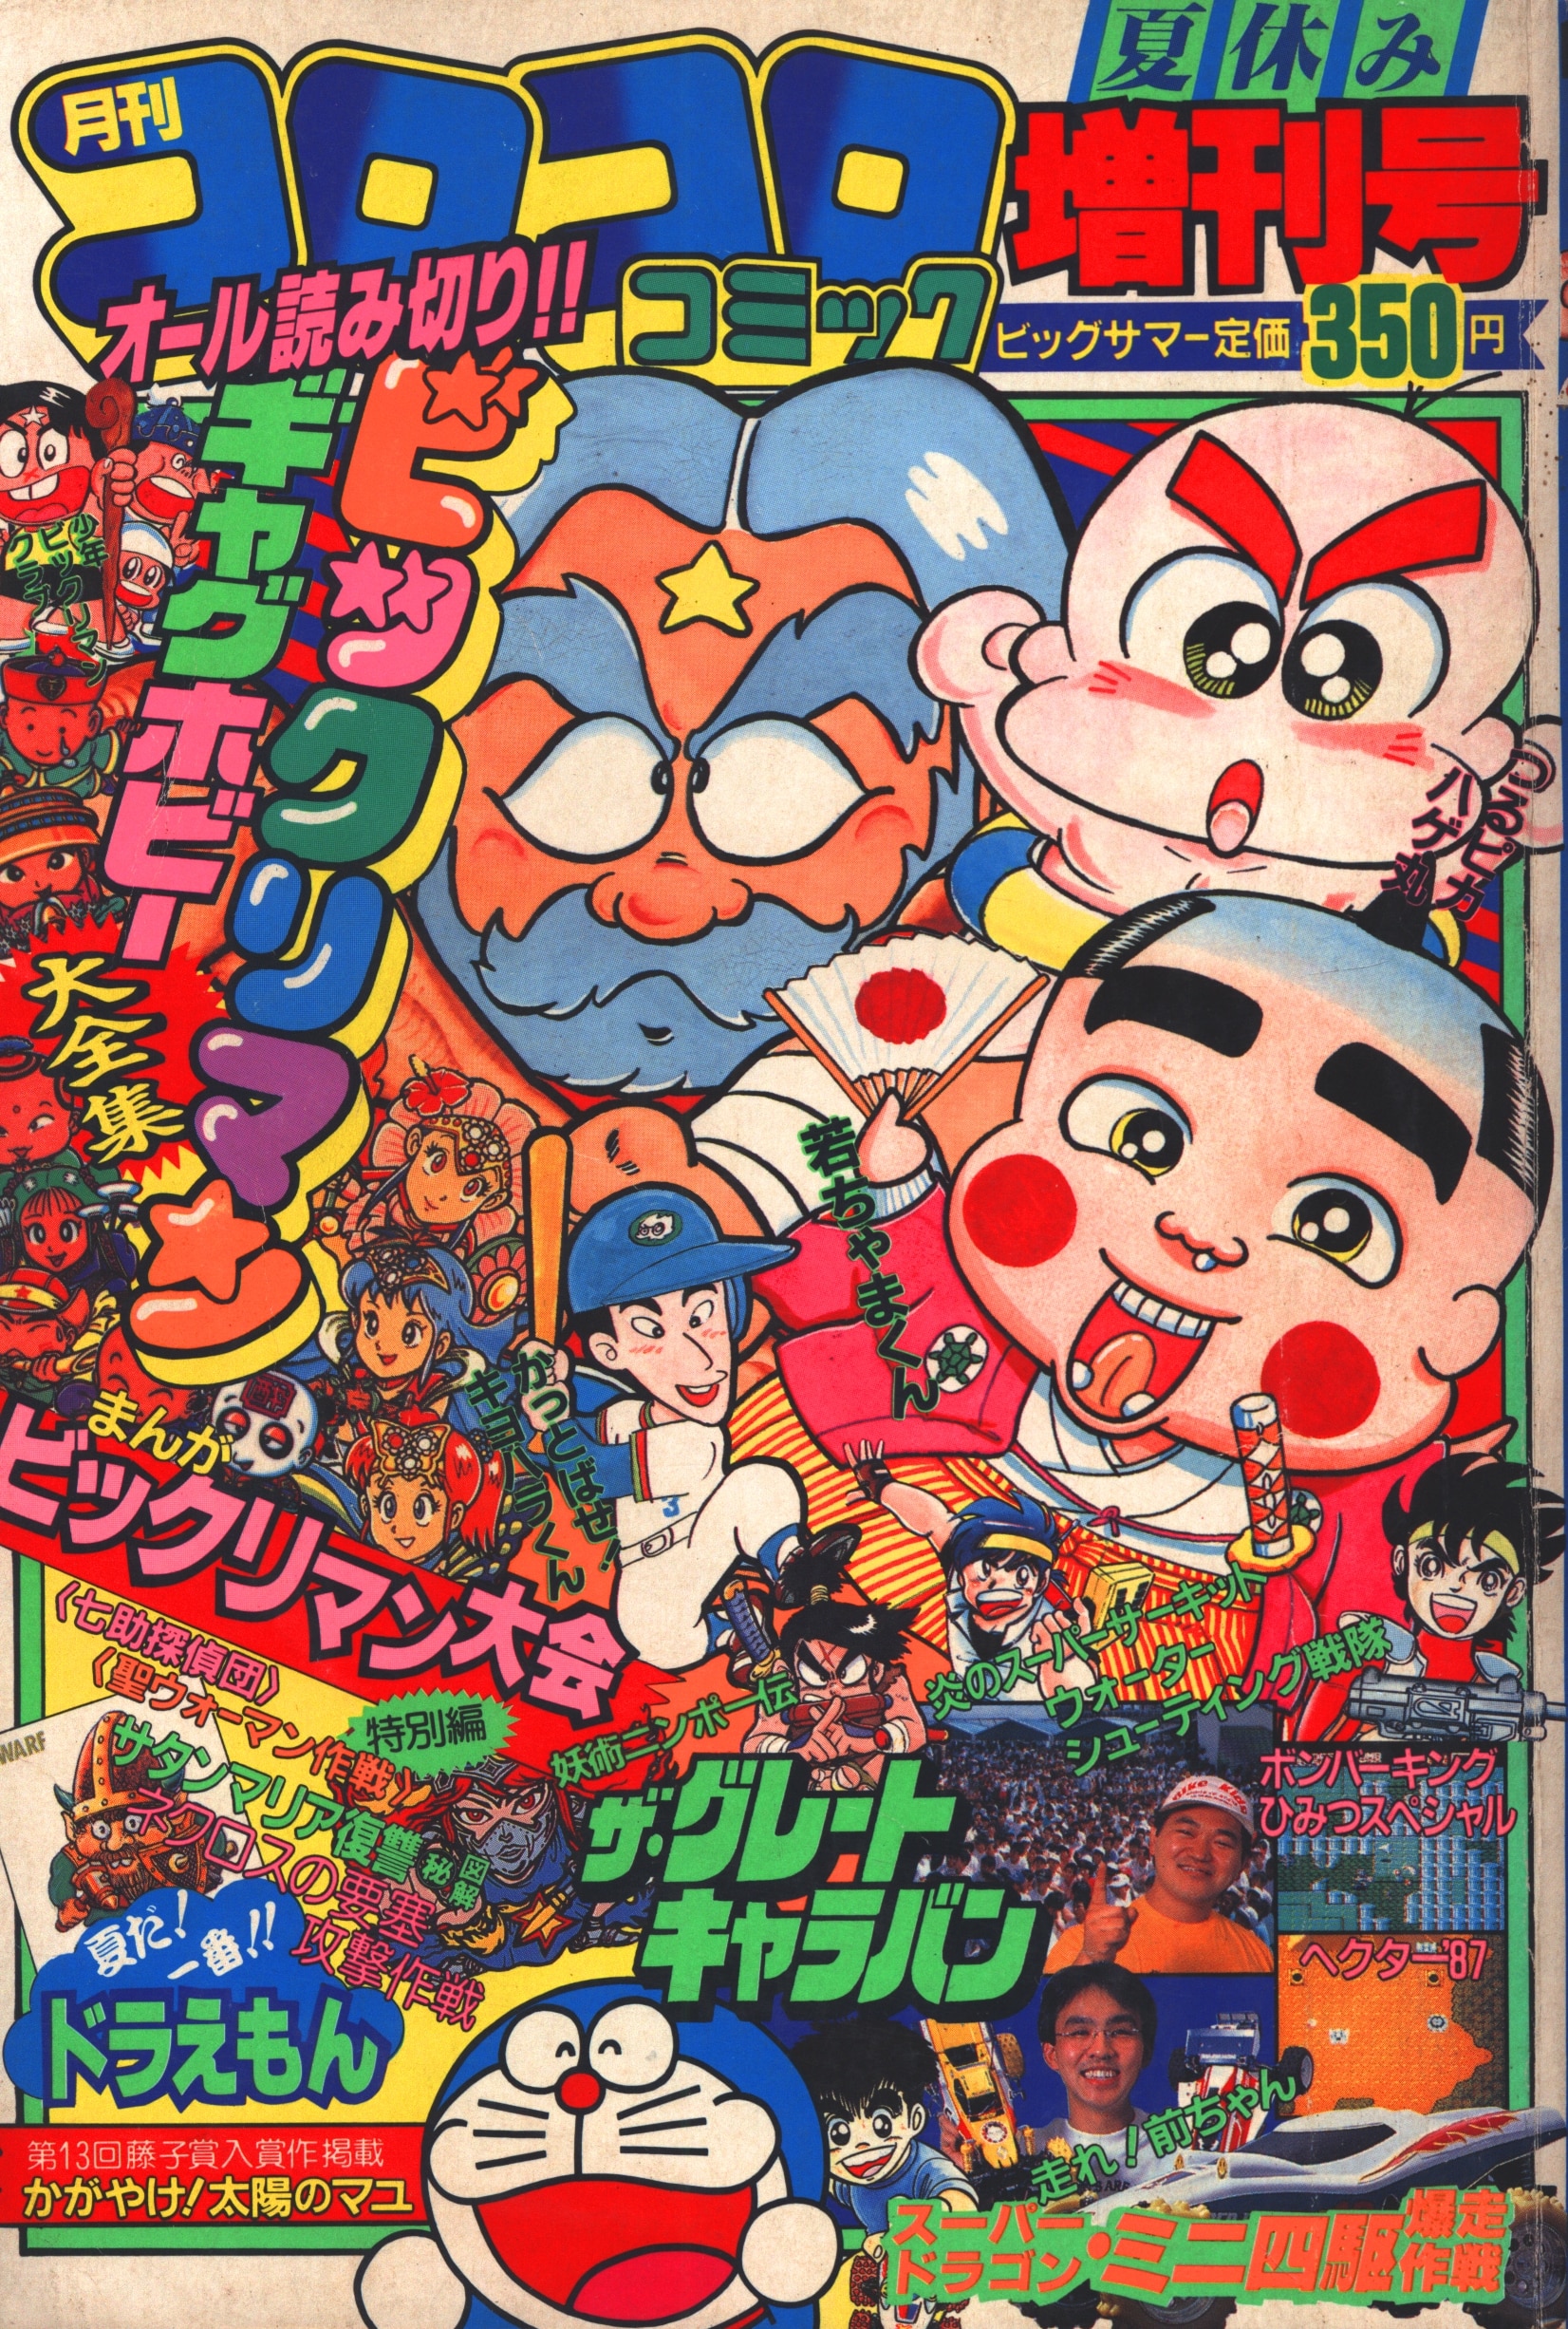 小学館 1987年(昭和62年)の漫画雑誌 コロコロコミック1987年(昭和62年